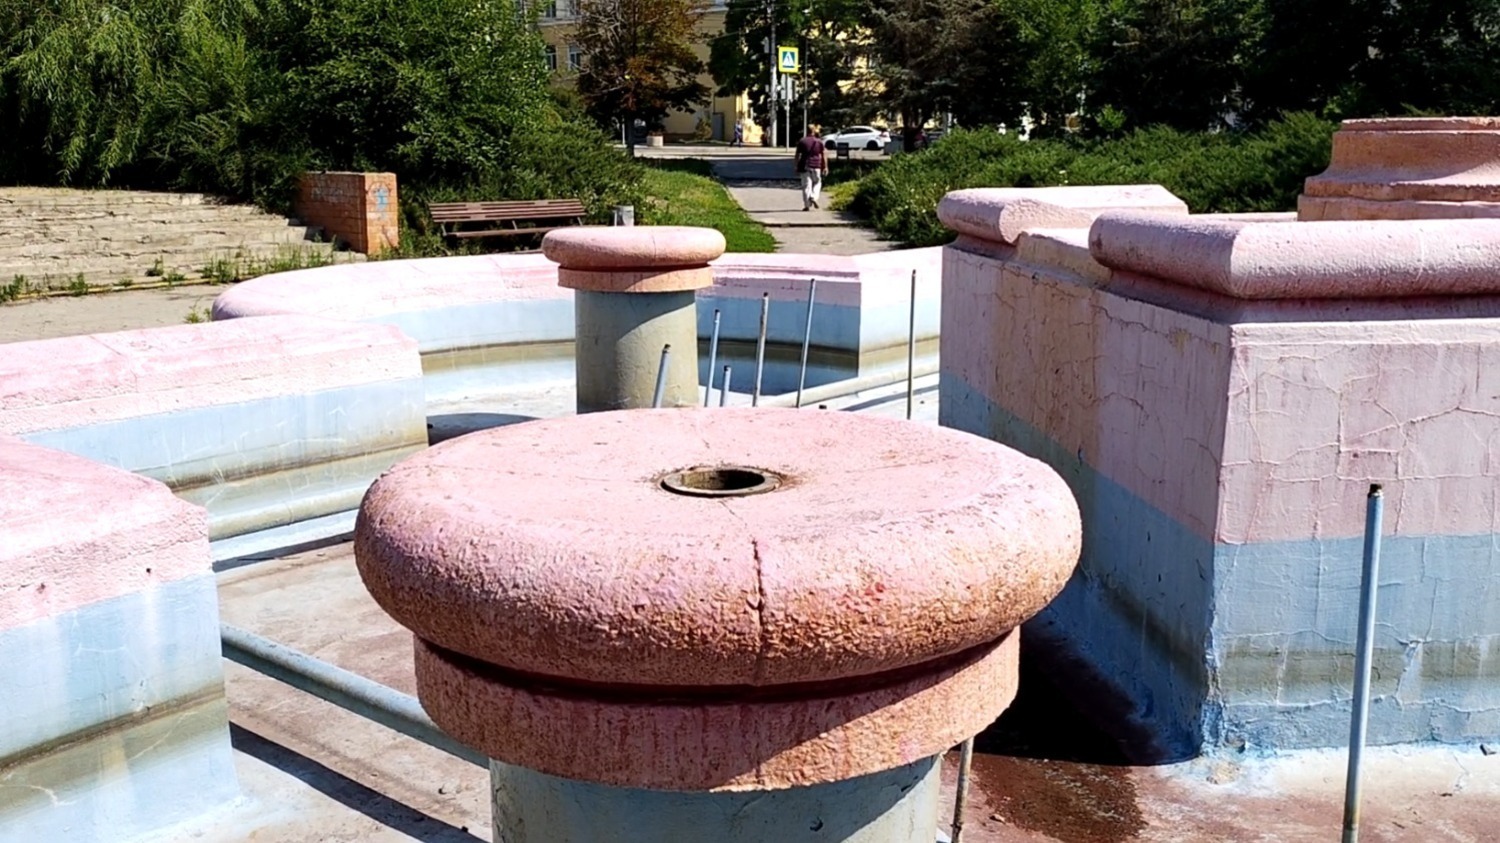 Многострадальный фонтан в сквере Симбирцева